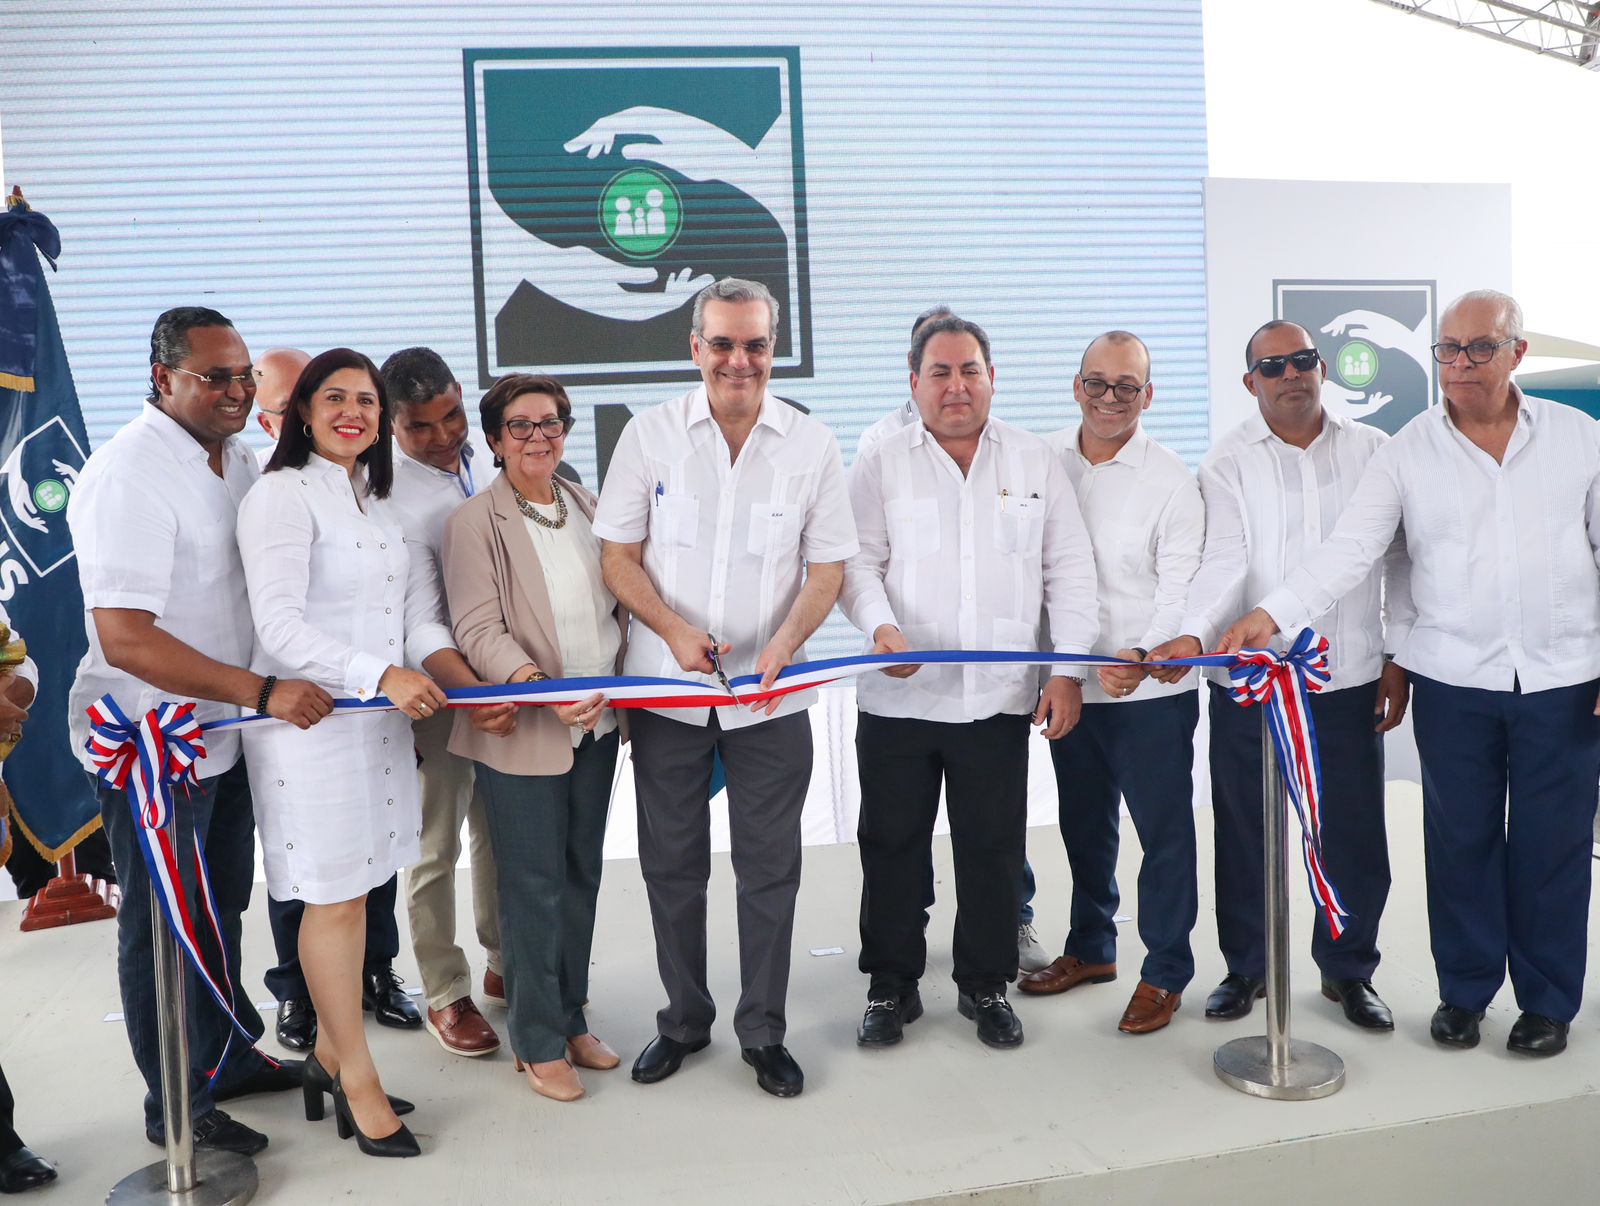 REPÚBLICA DOMINICANA: Presidente Abinader entrega remozado hospital de Villa Tapia, inaugura sede de INFOTEP especializada en turismo y centros comunales